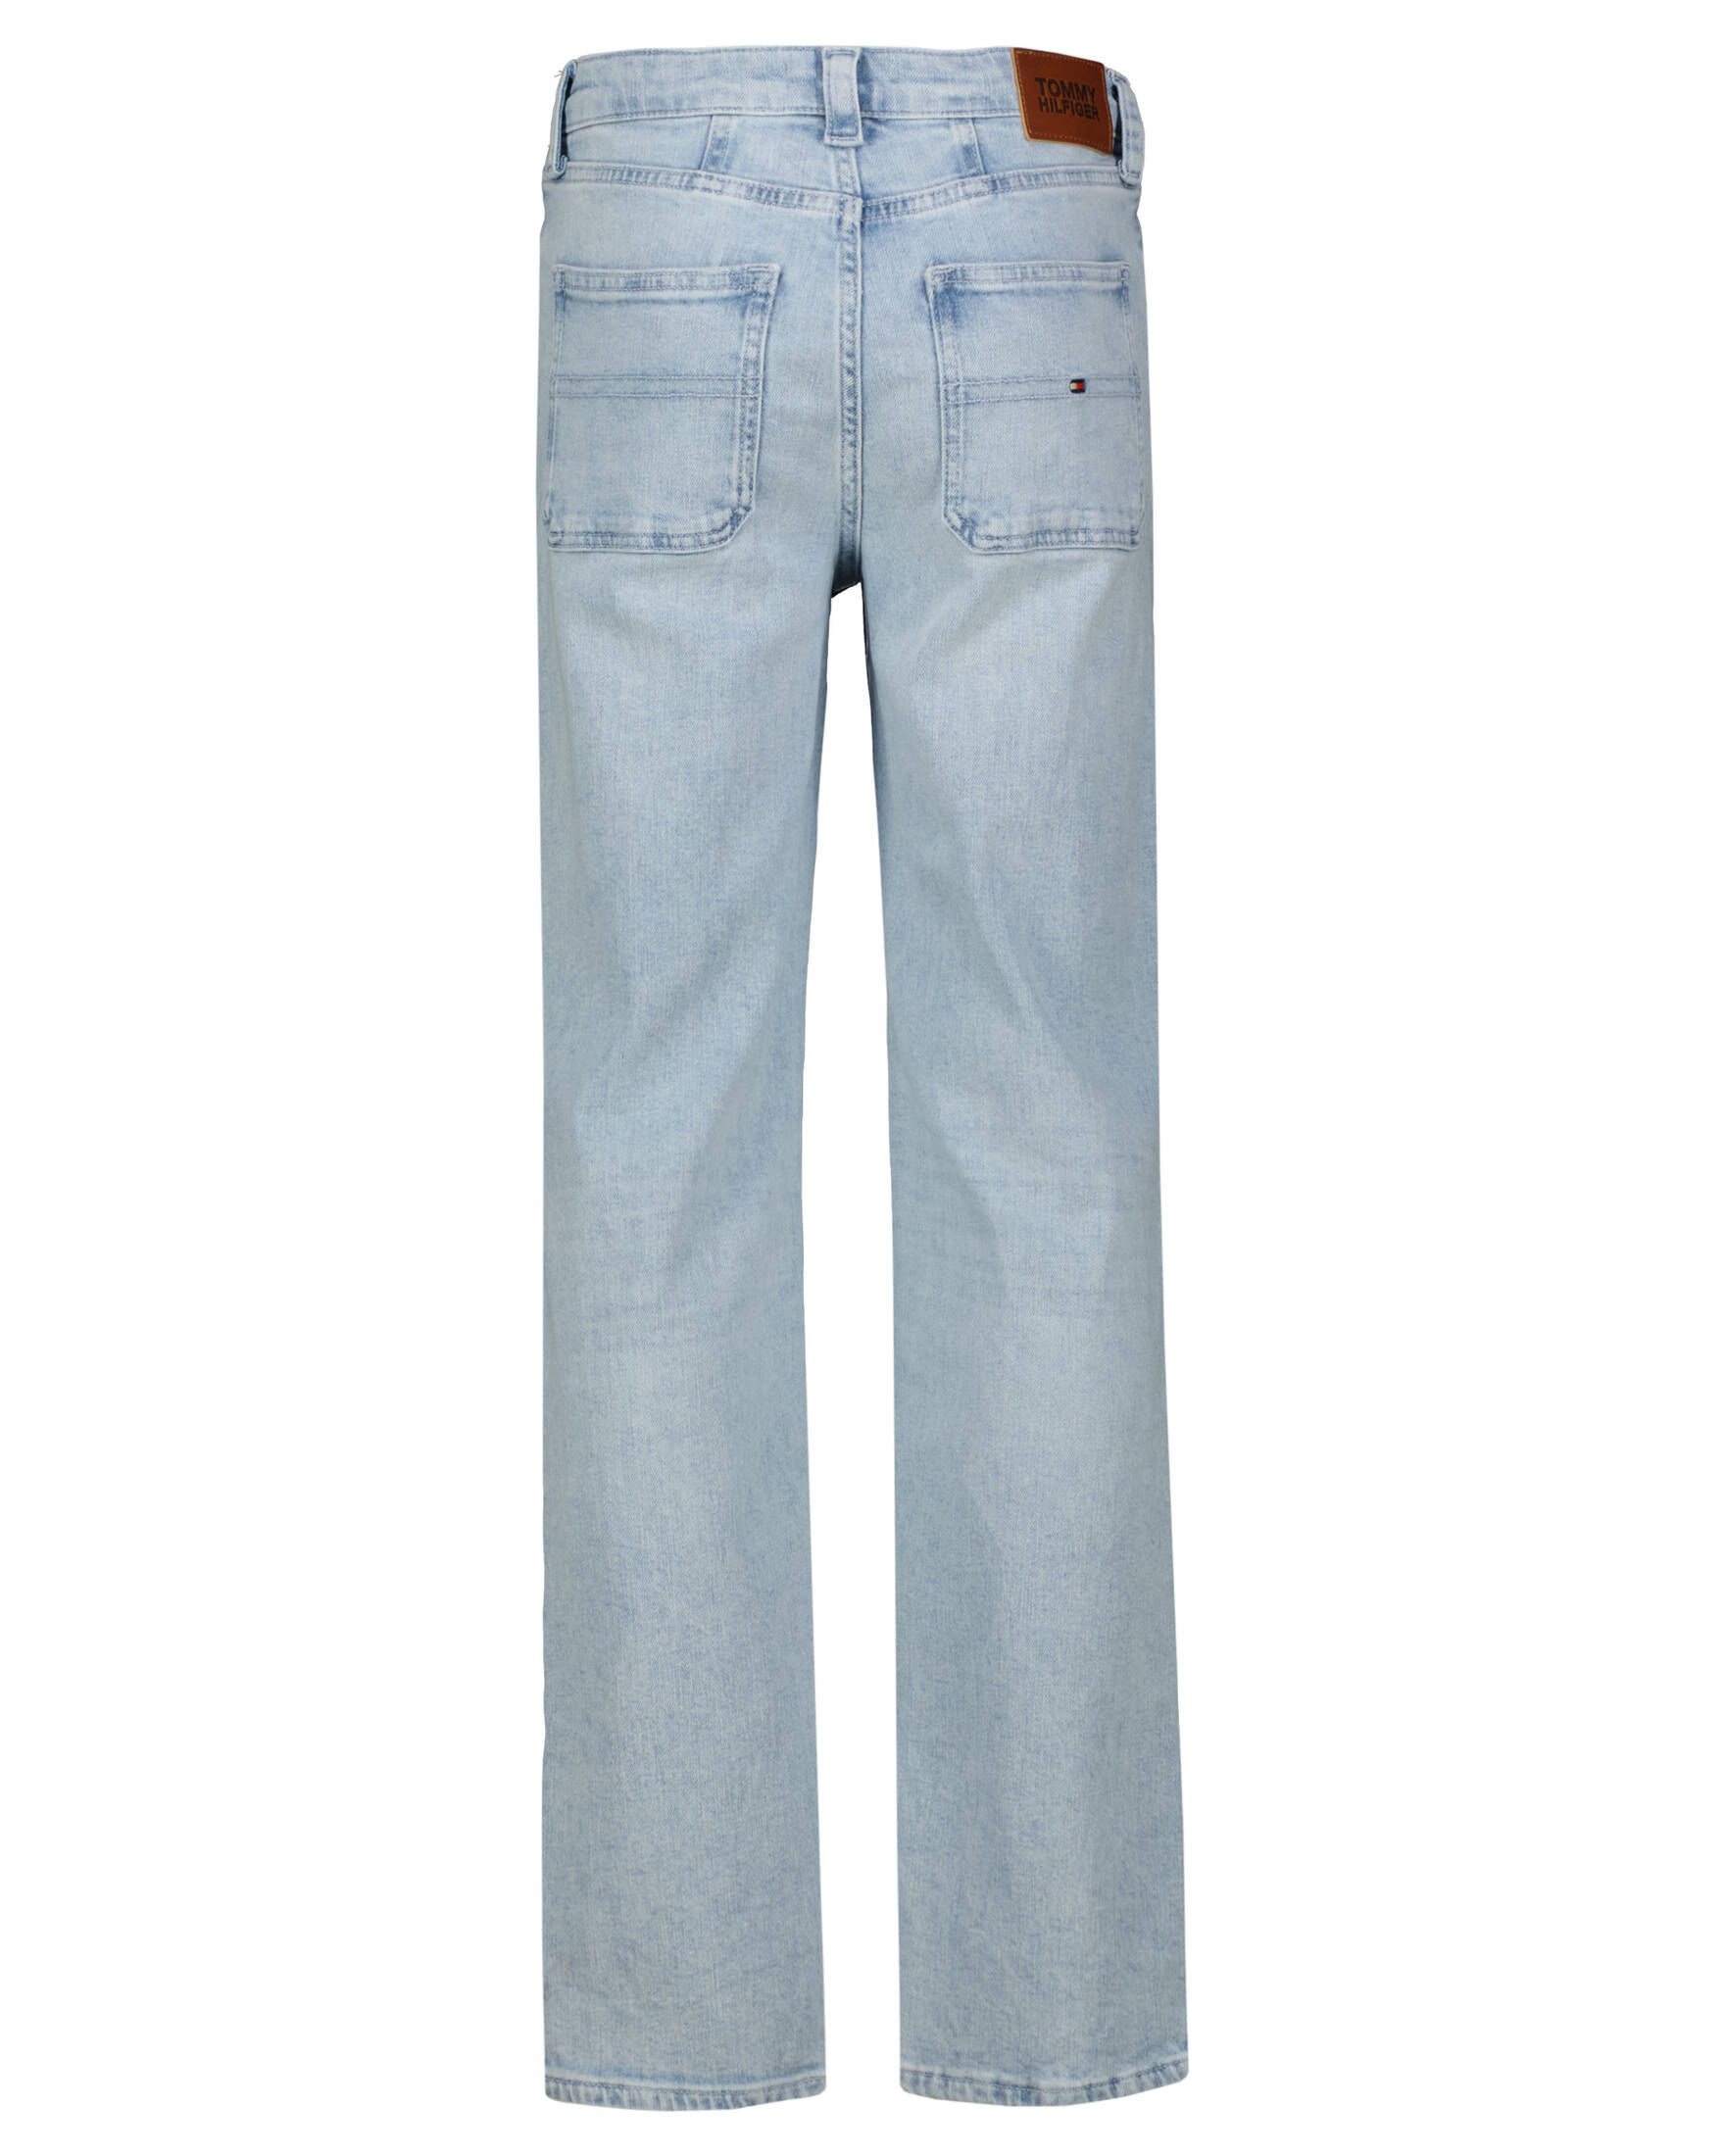 Tommy Hilfiger | BLEACHED engelhorn Jeans Mädchen GIRLFRIEND kaufen